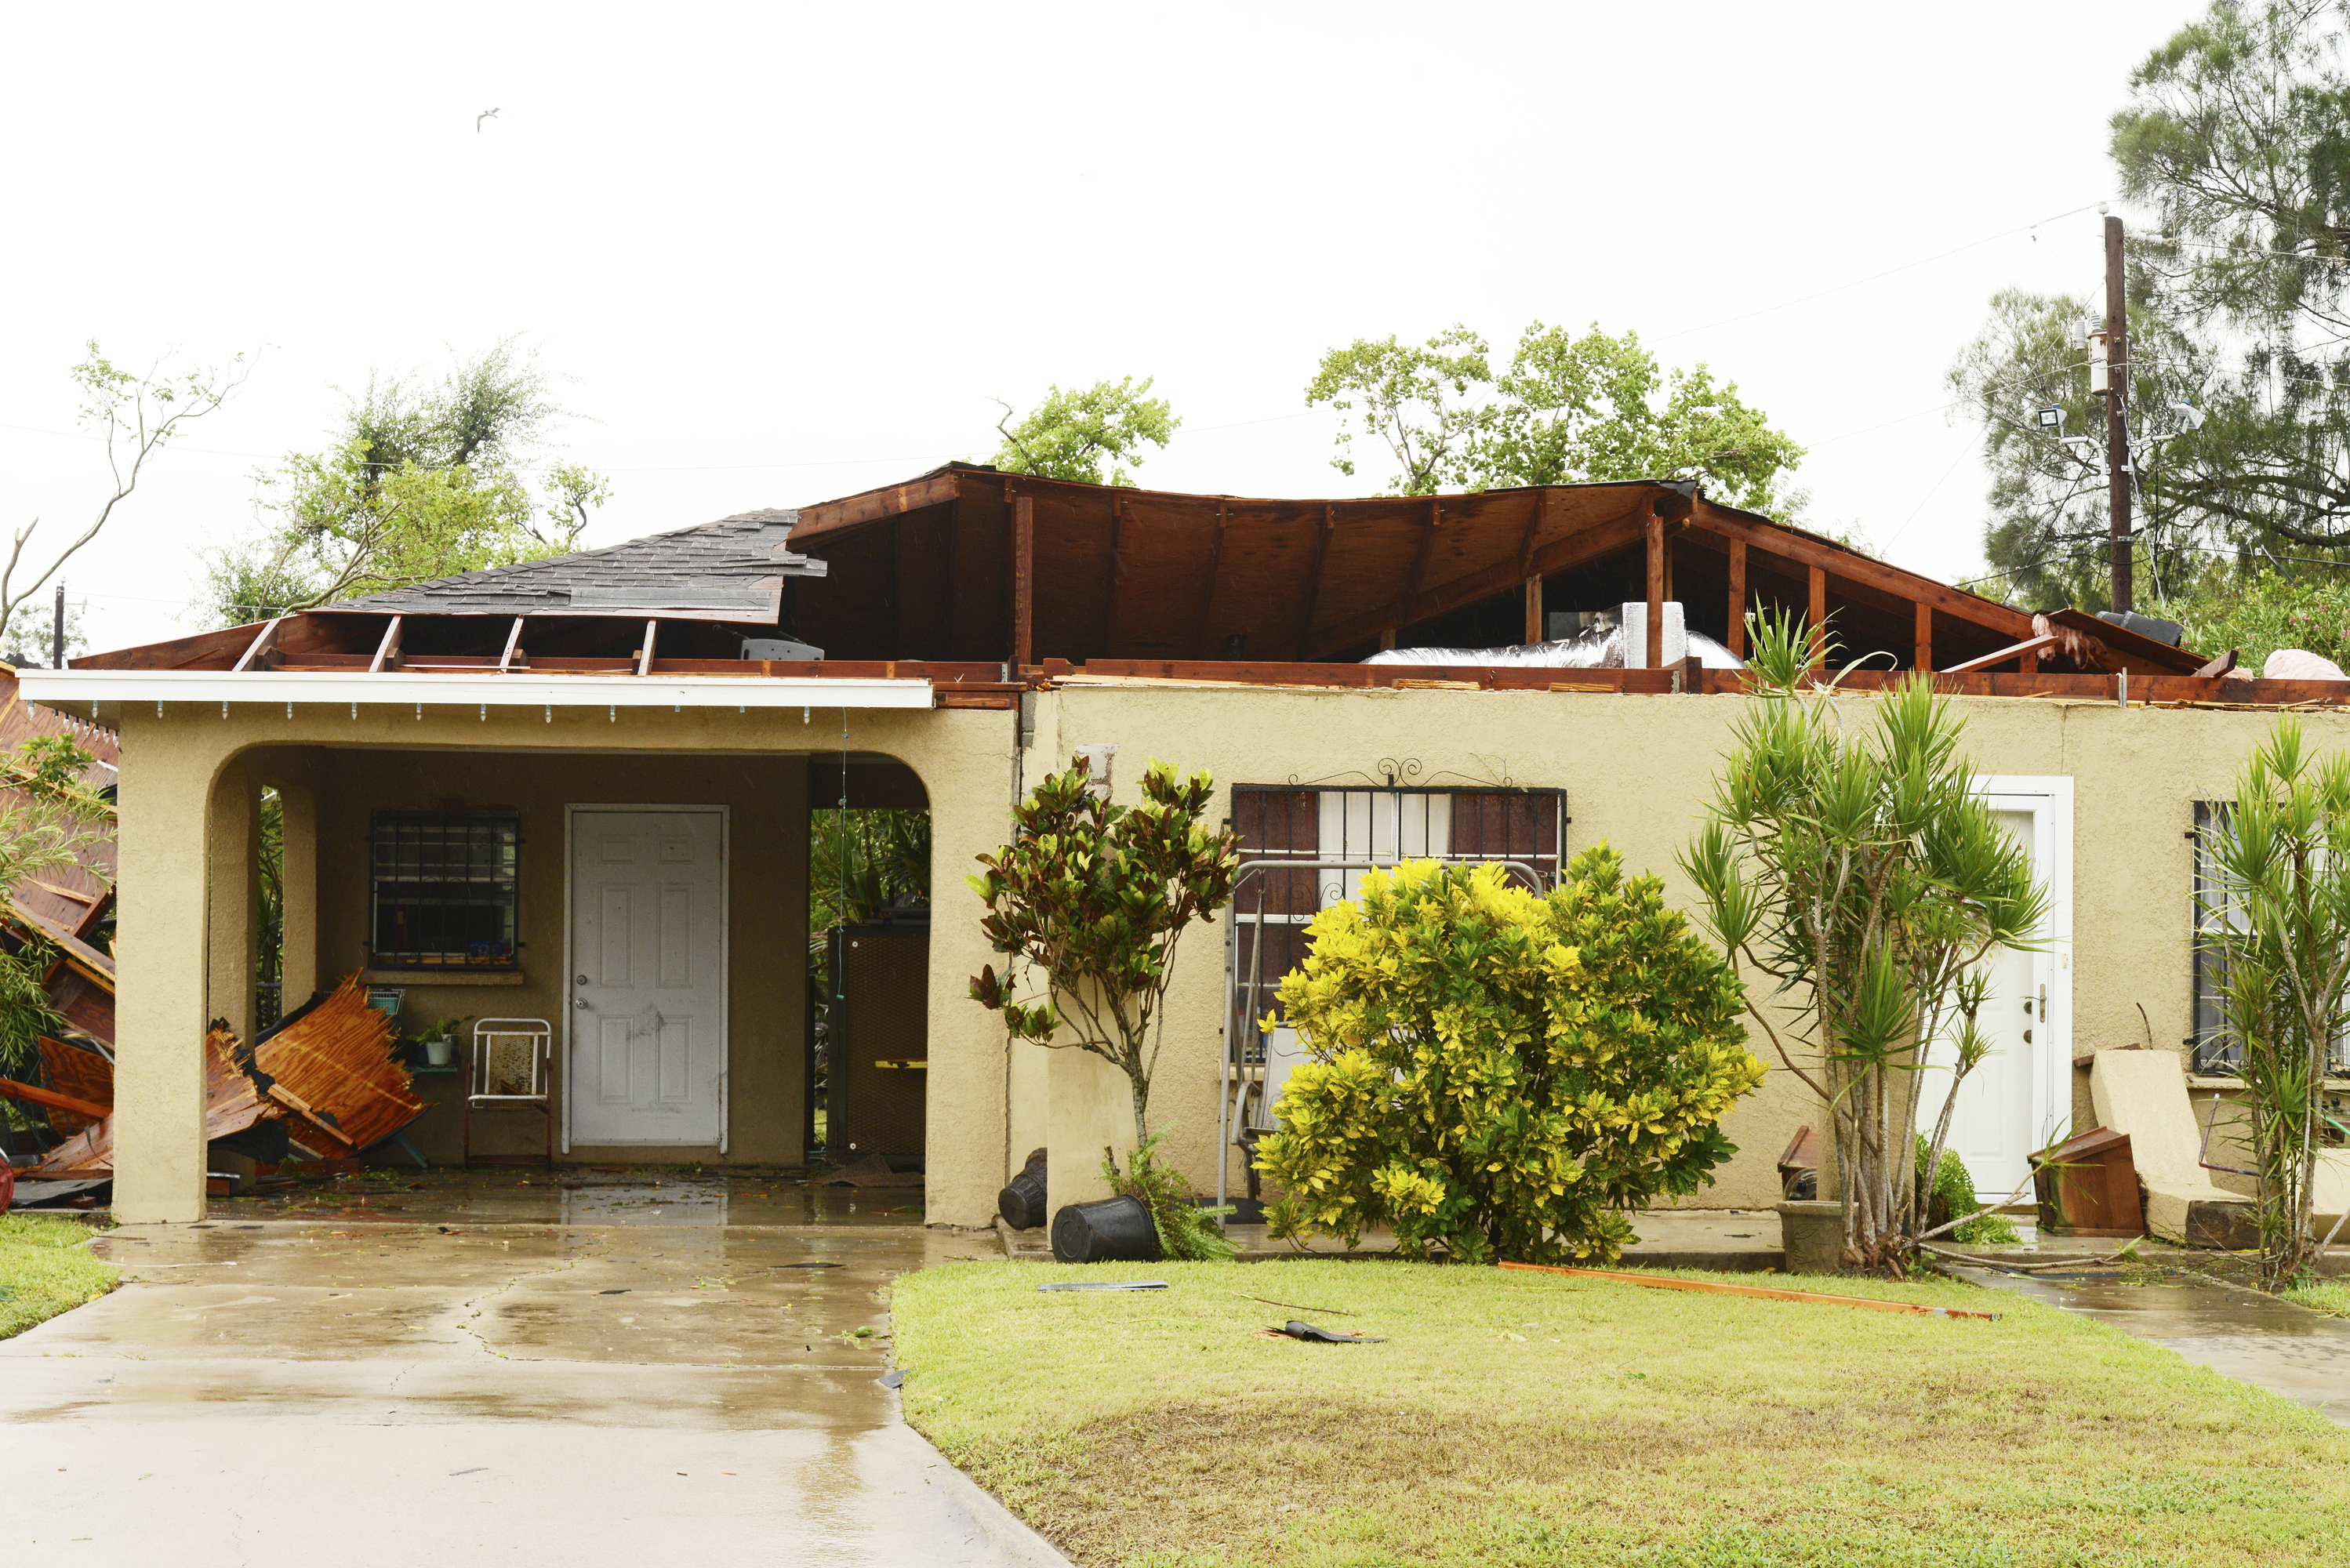 Una casa en Brownsville, Texas, dañada por un posible tornado que se formó tras el paso de Hanna (Miguel Roberts/The Brownsville Herald via AP)